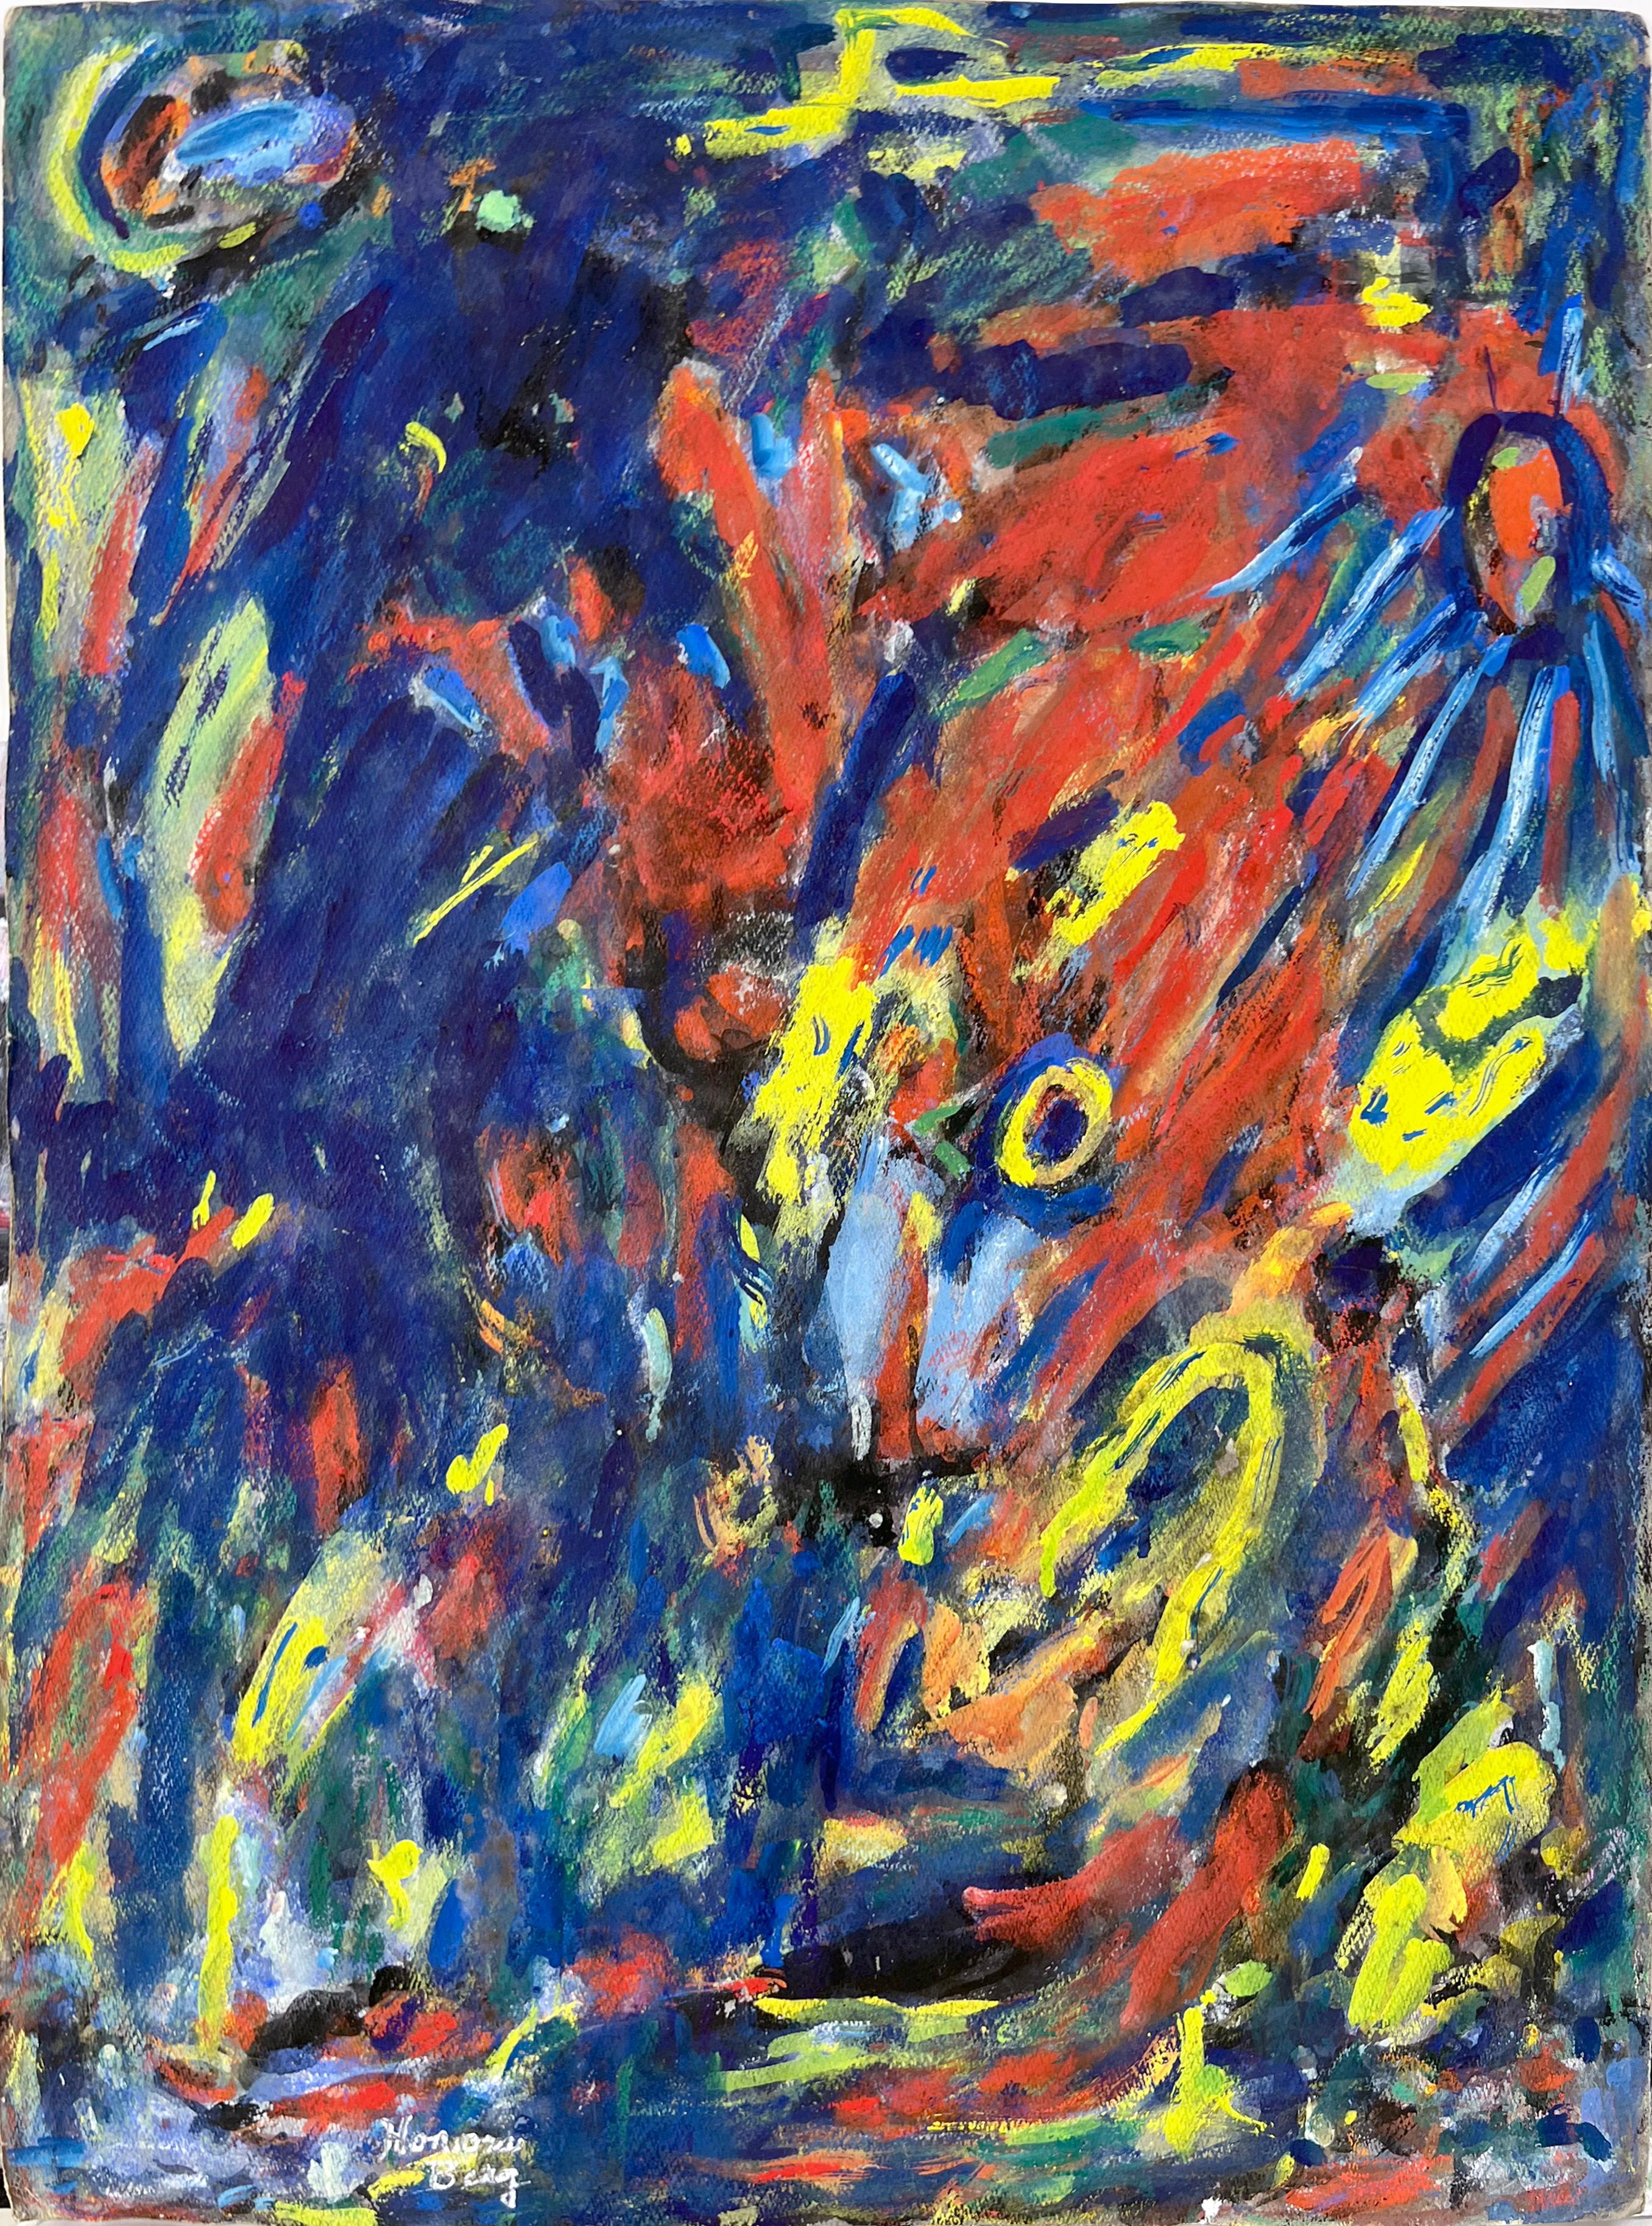 Abstrakt-expressionistisches Ölgemälde auf Papier Honora Berg Berkeley, Bay Area, 1959
Abstraktes expressionistisches Gemälde von Honora Berg (Amerikanerin, 1897-1985) aus der San Francisco Bay Area, ein brillantes fauvistisches Beispiel für den